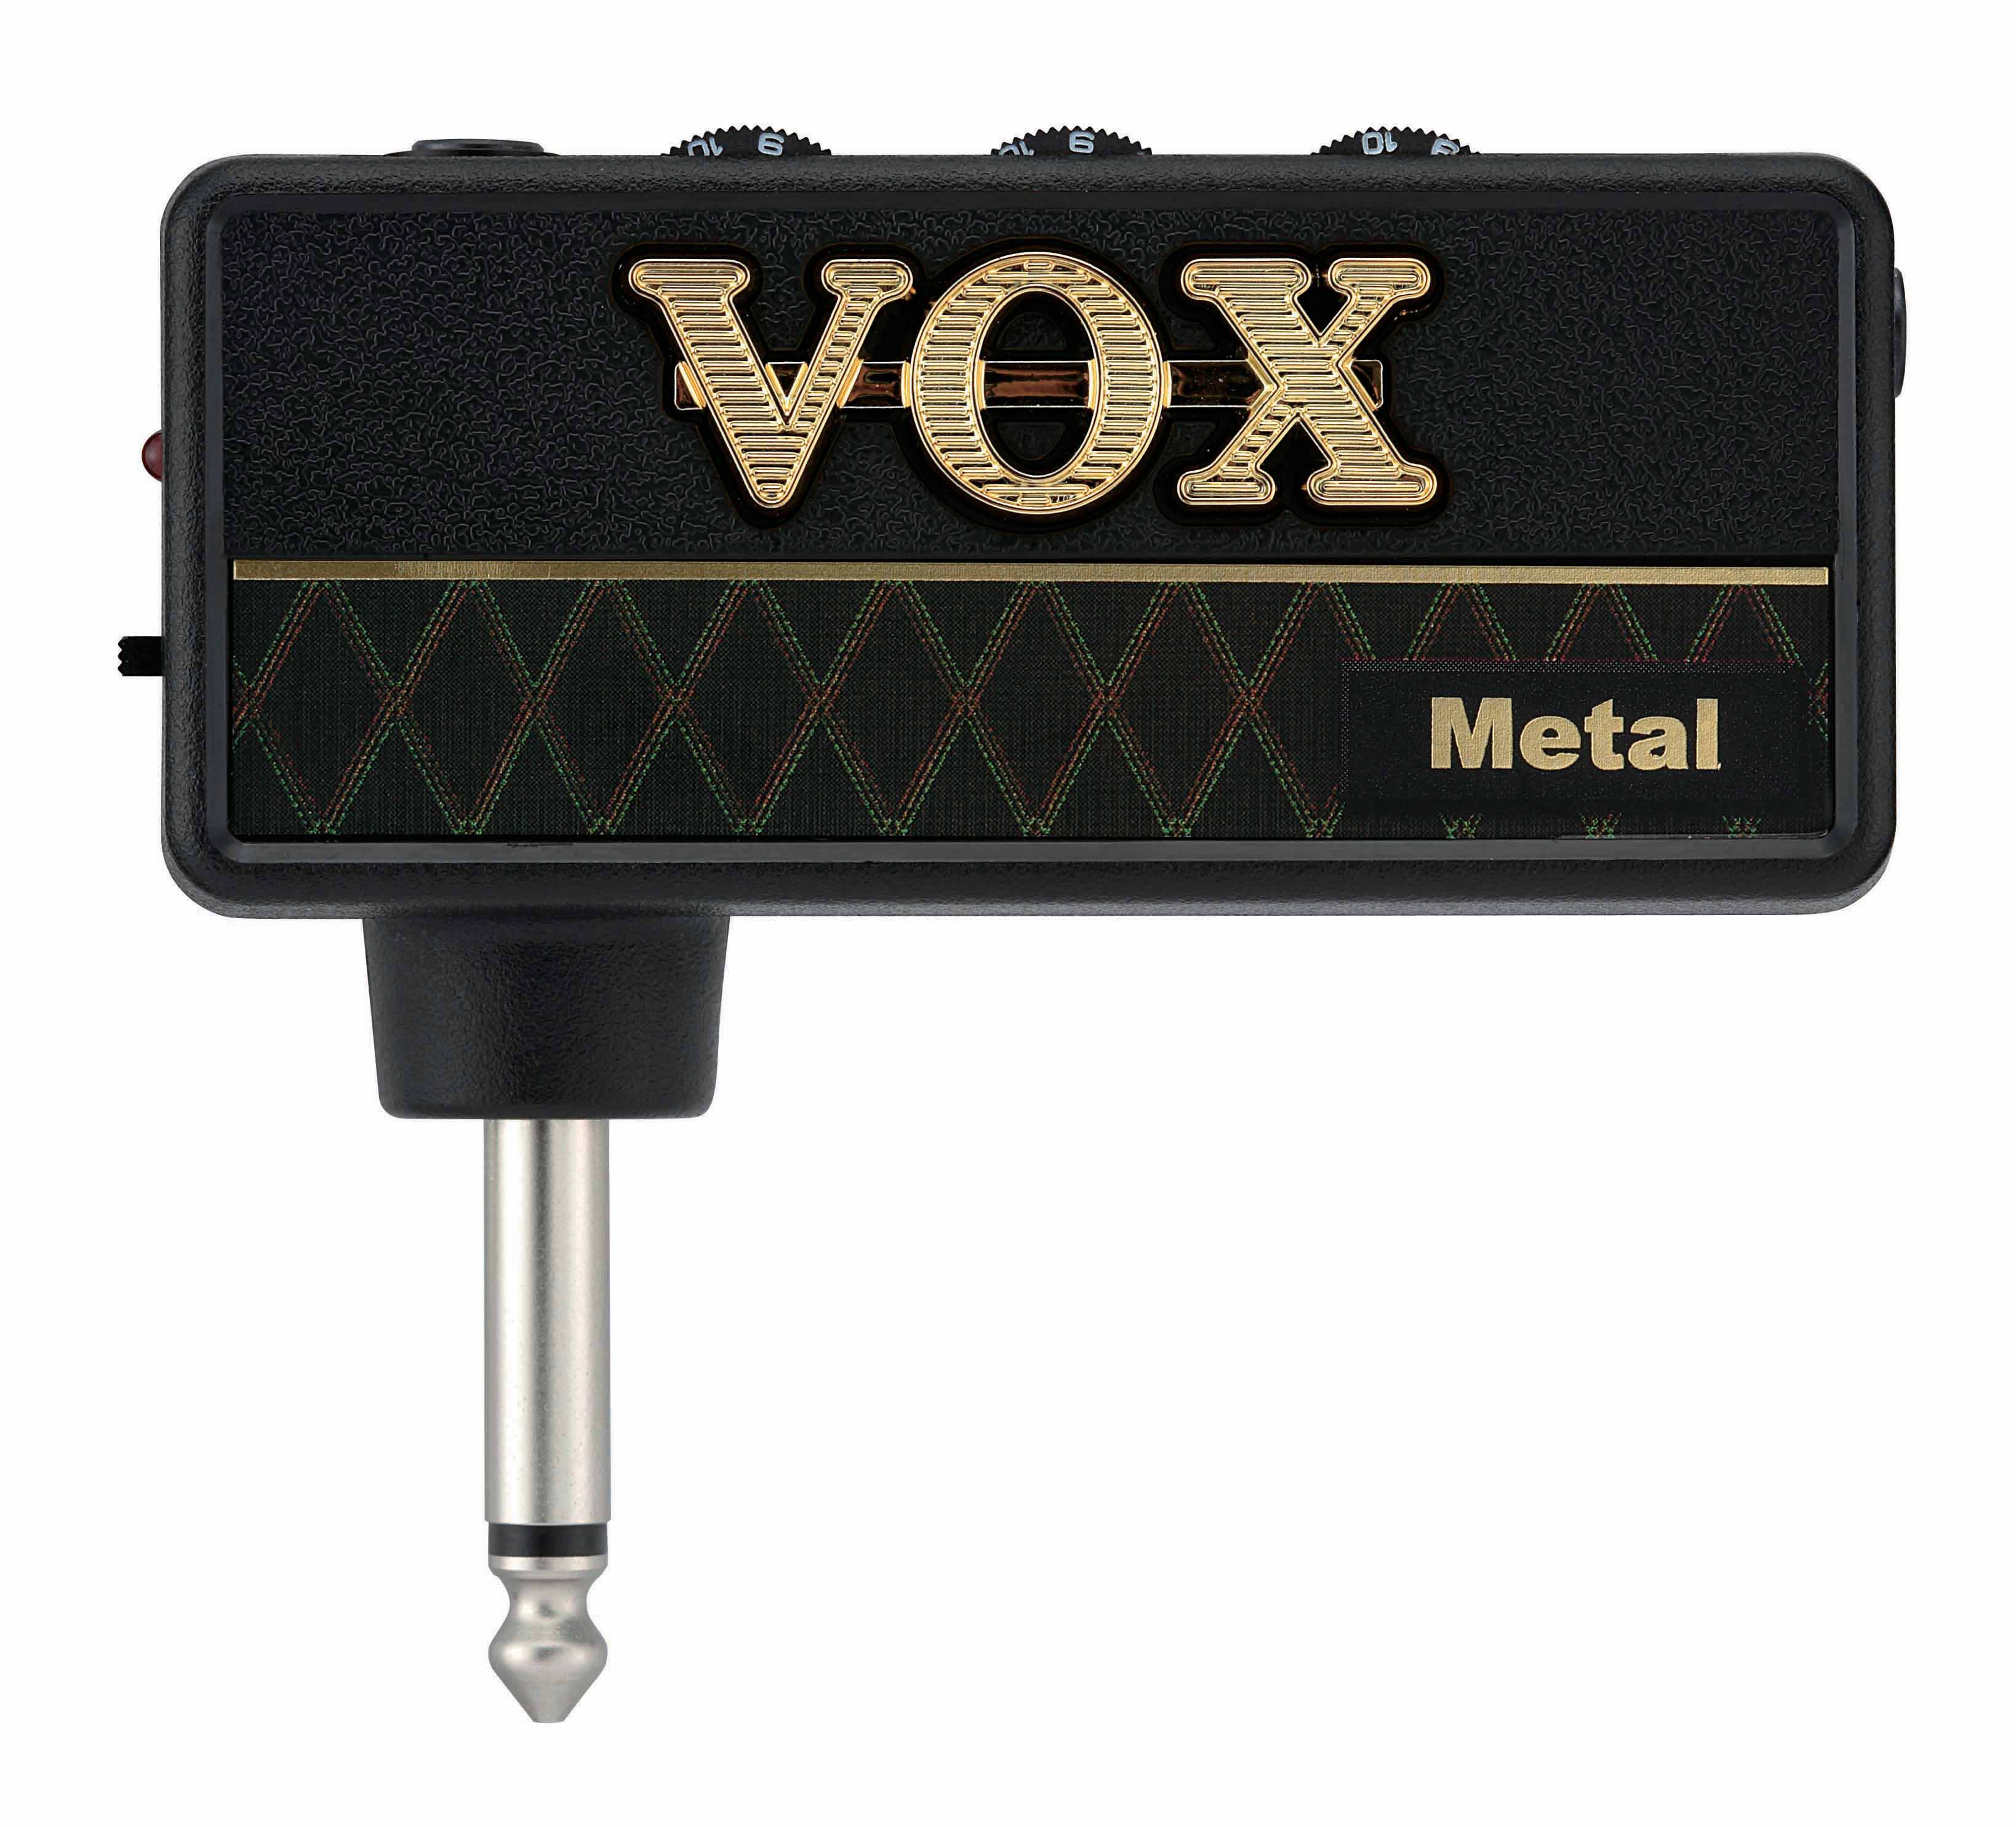 Vox Vox amPlug APMT Metal Headphone Amp